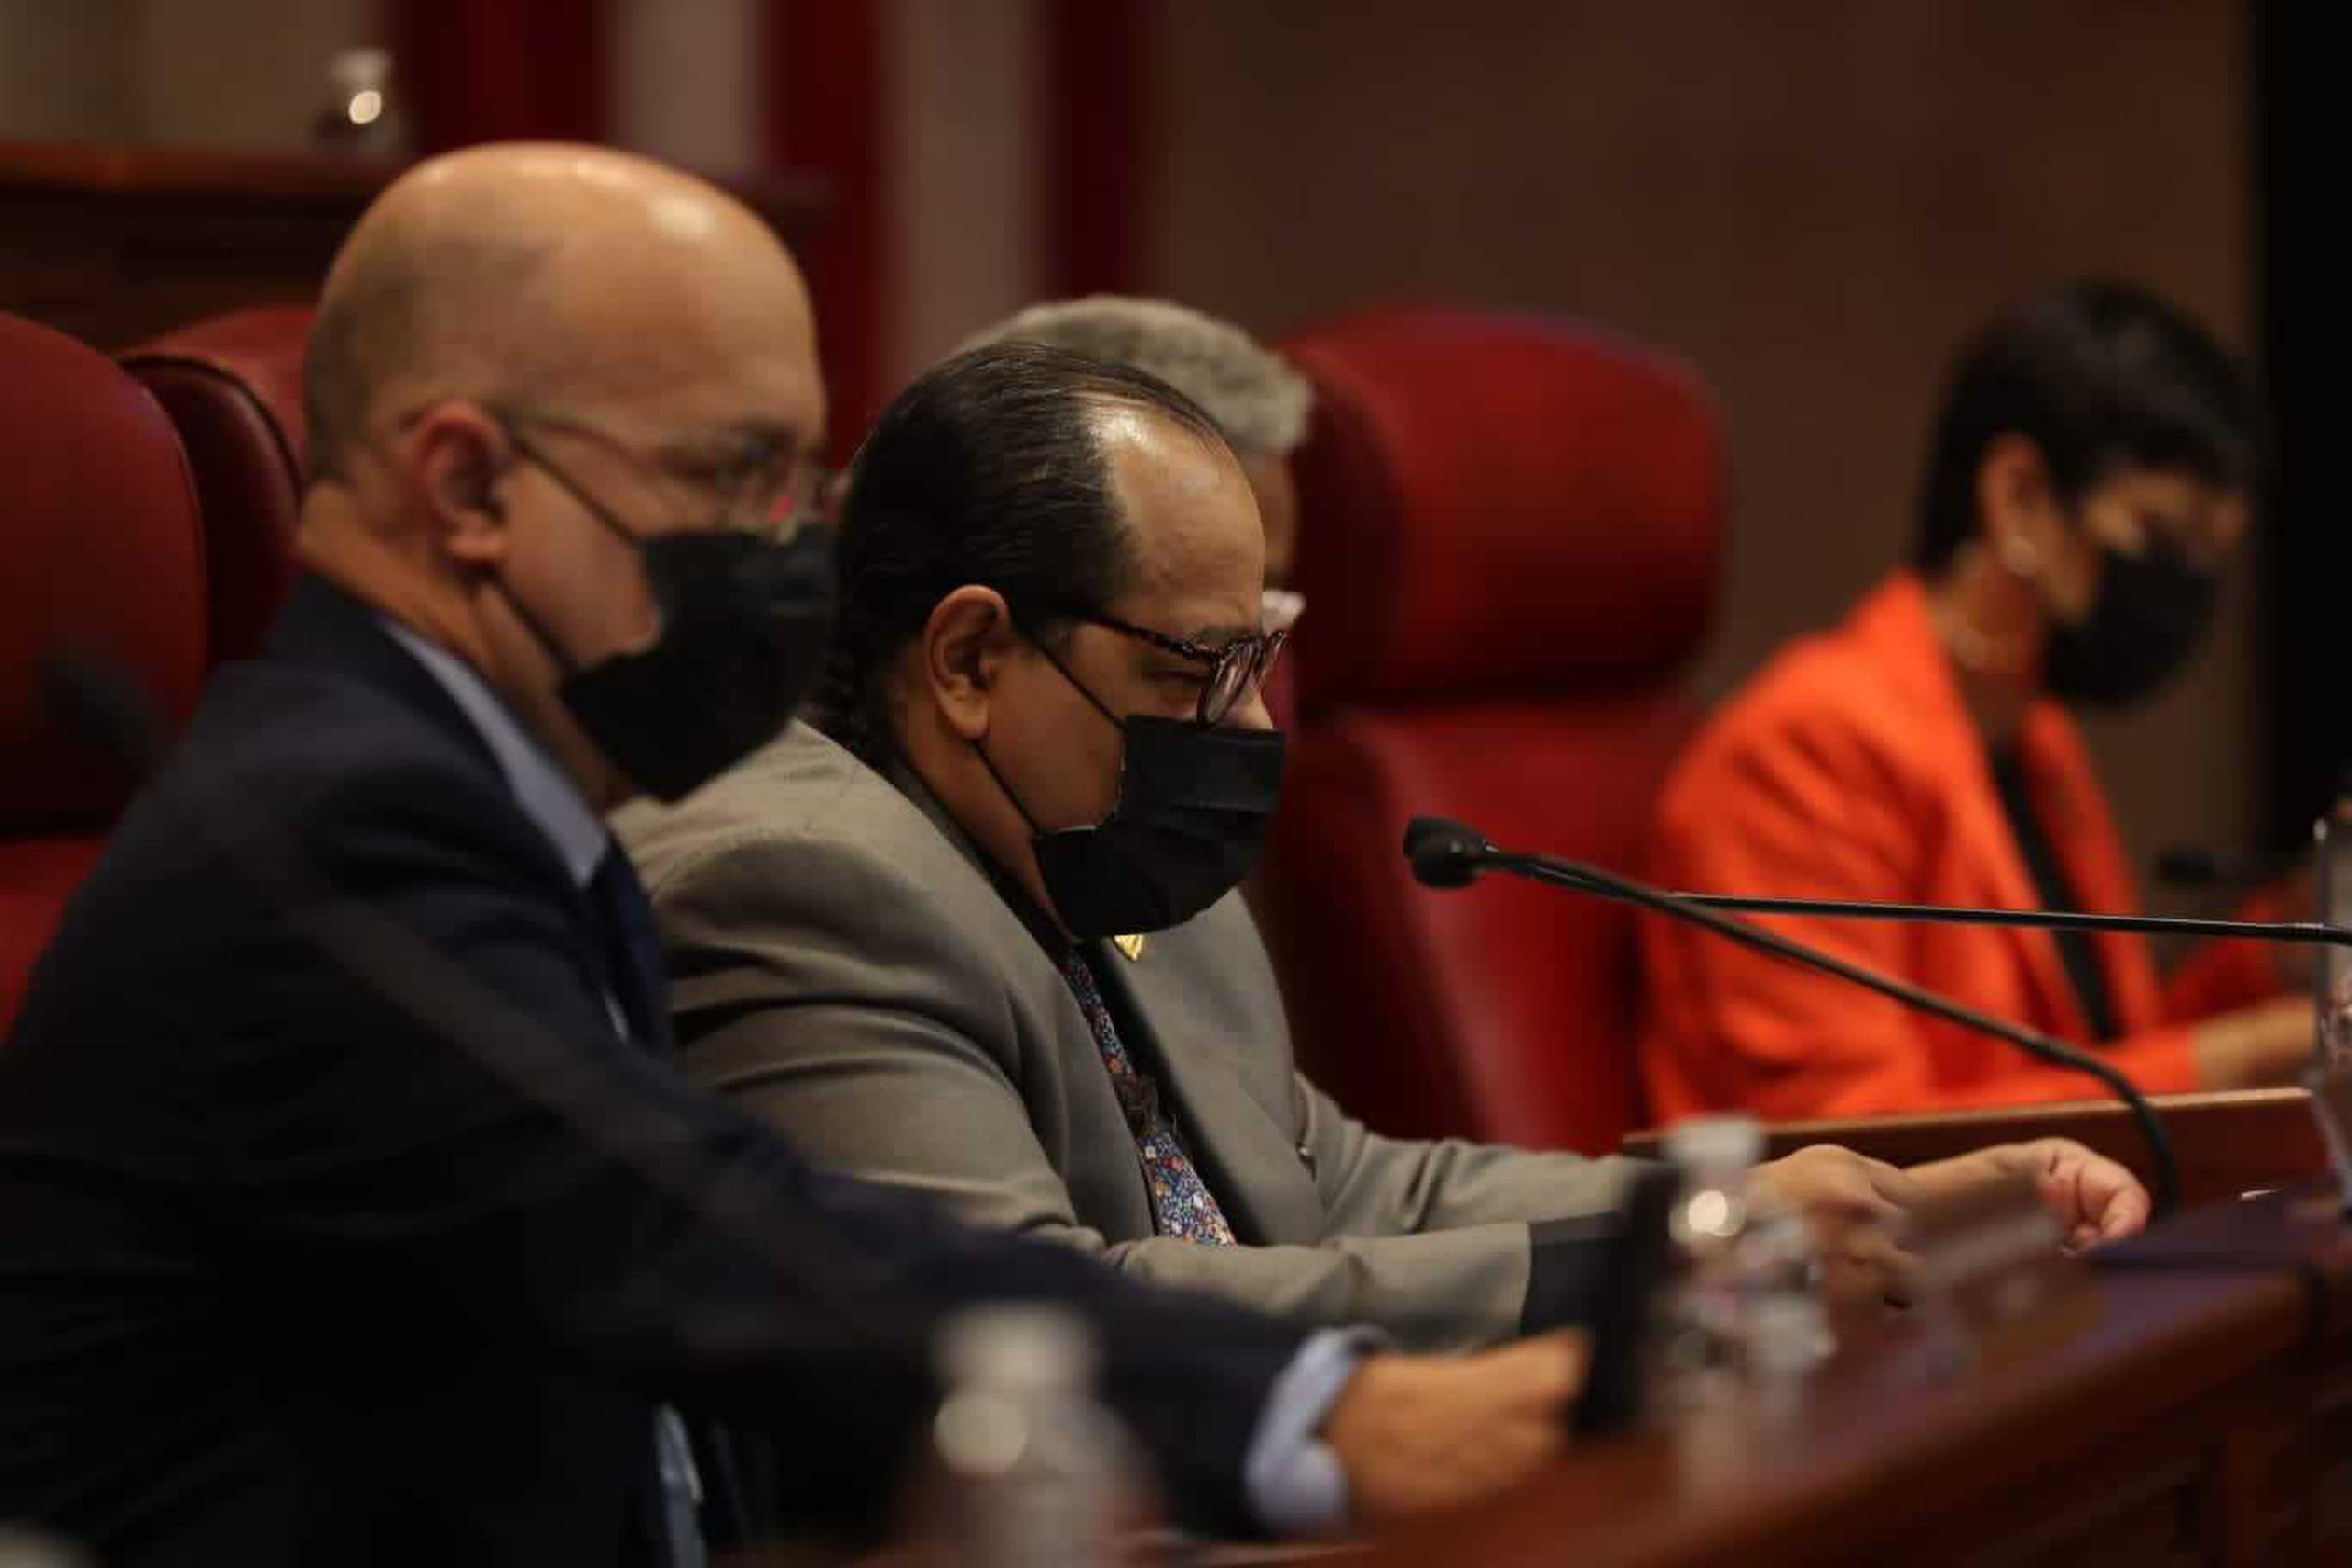 El senador José Vargas Vidot preside la vista sobre la medida que prohibiría las terapias de conversión.